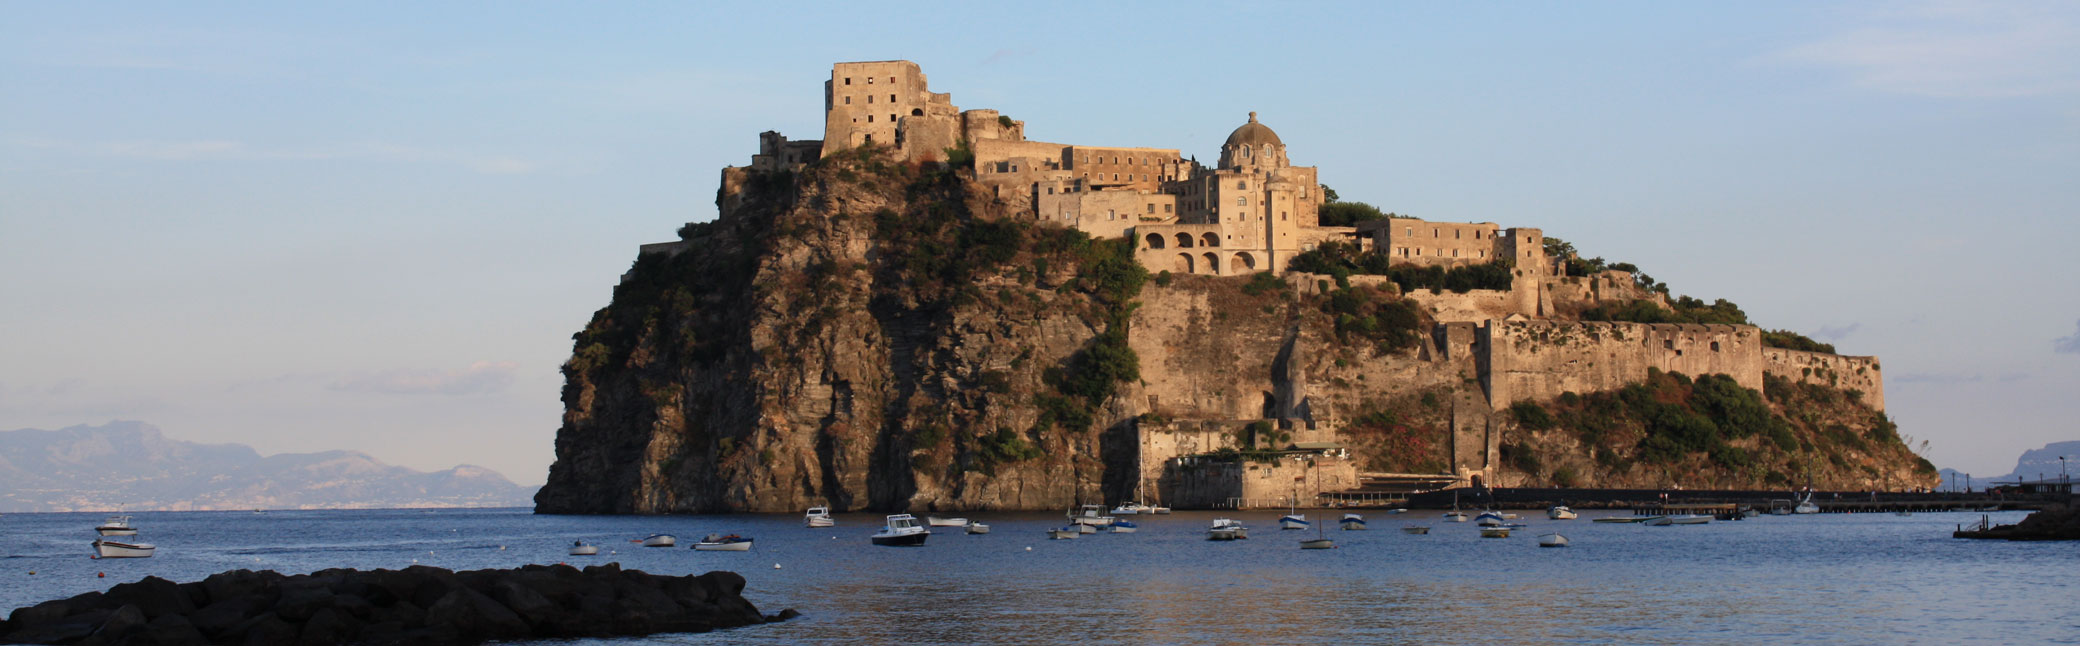 Il Castello Aragonese ad Ischia Ponte